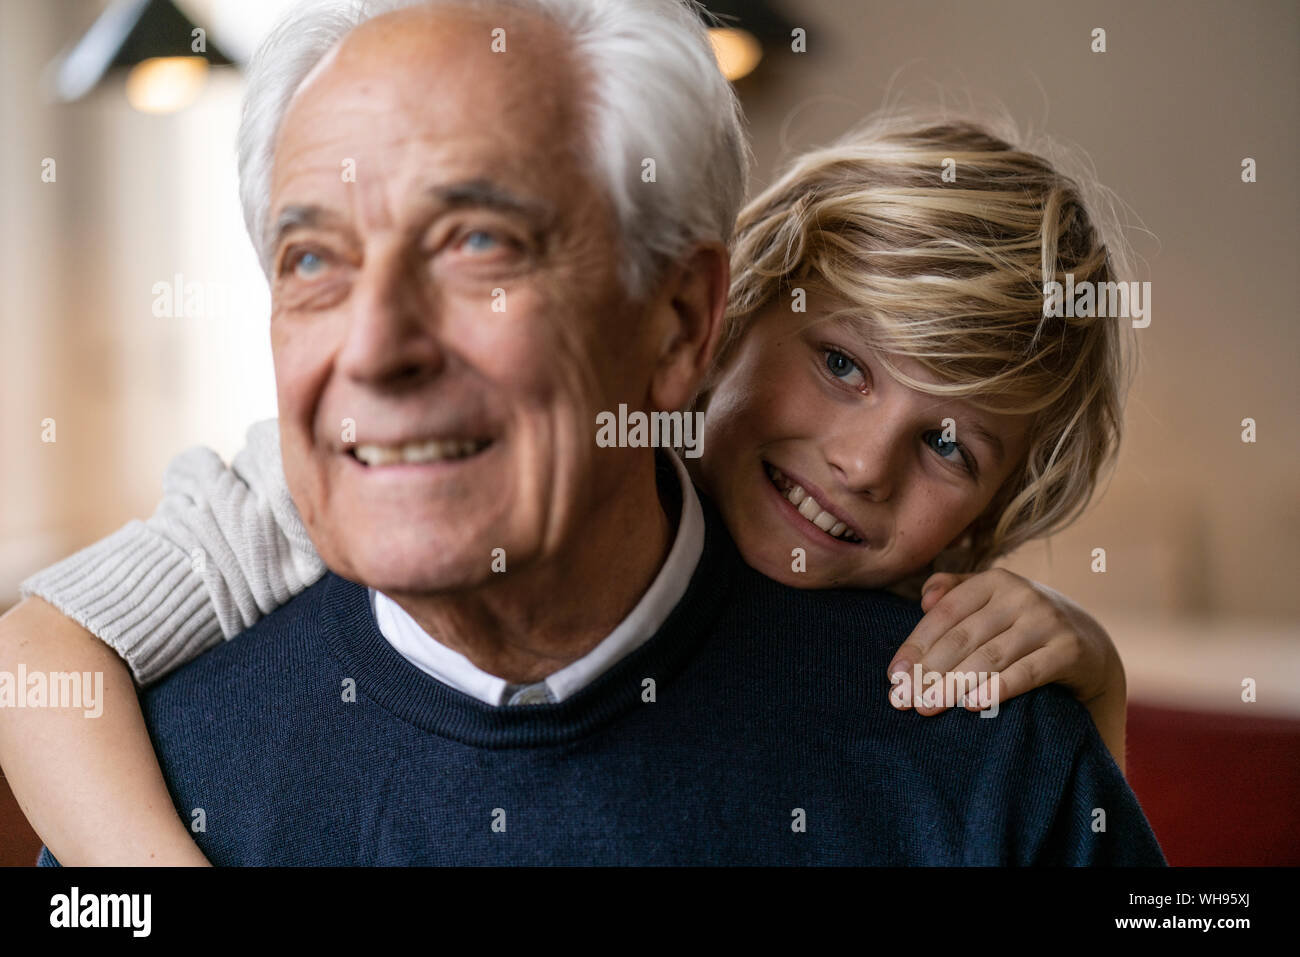 Happy Enkel umarmen Großvater Stockfoto